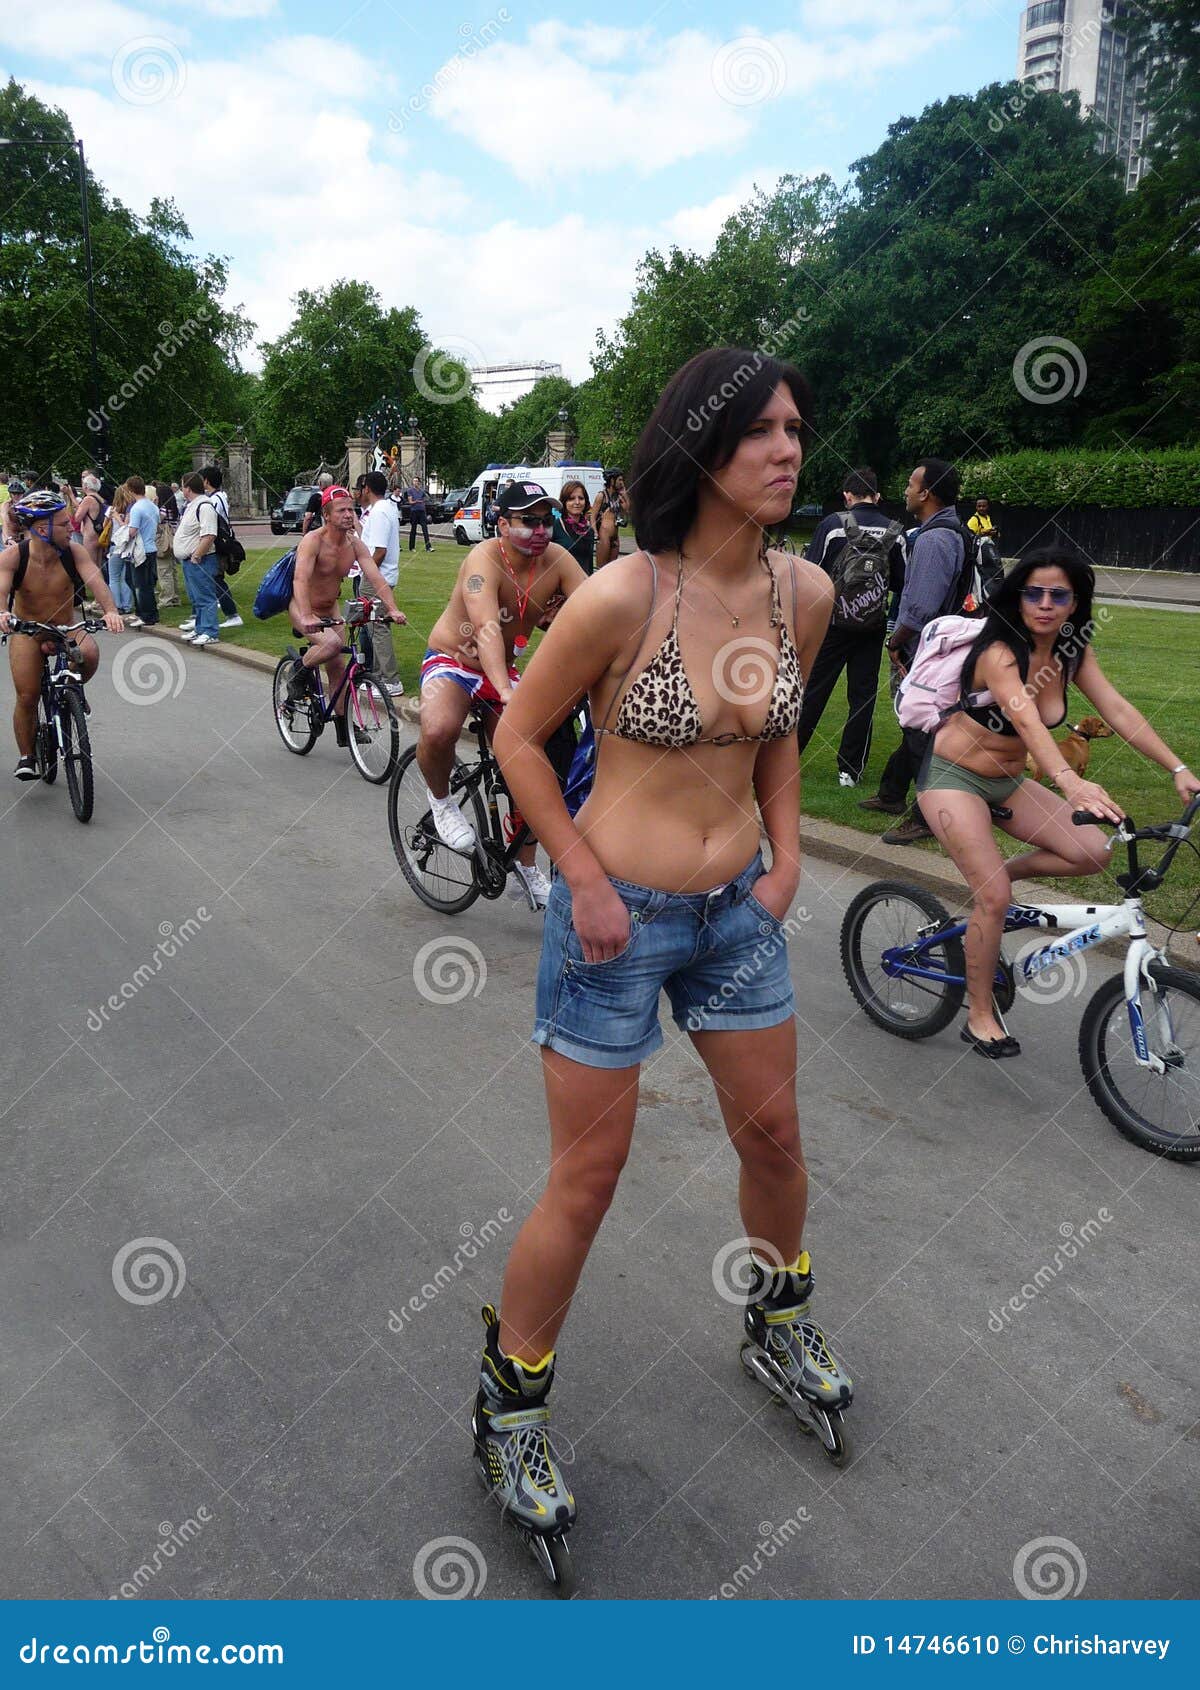 amit rajyaguru share naked bike ride london photos